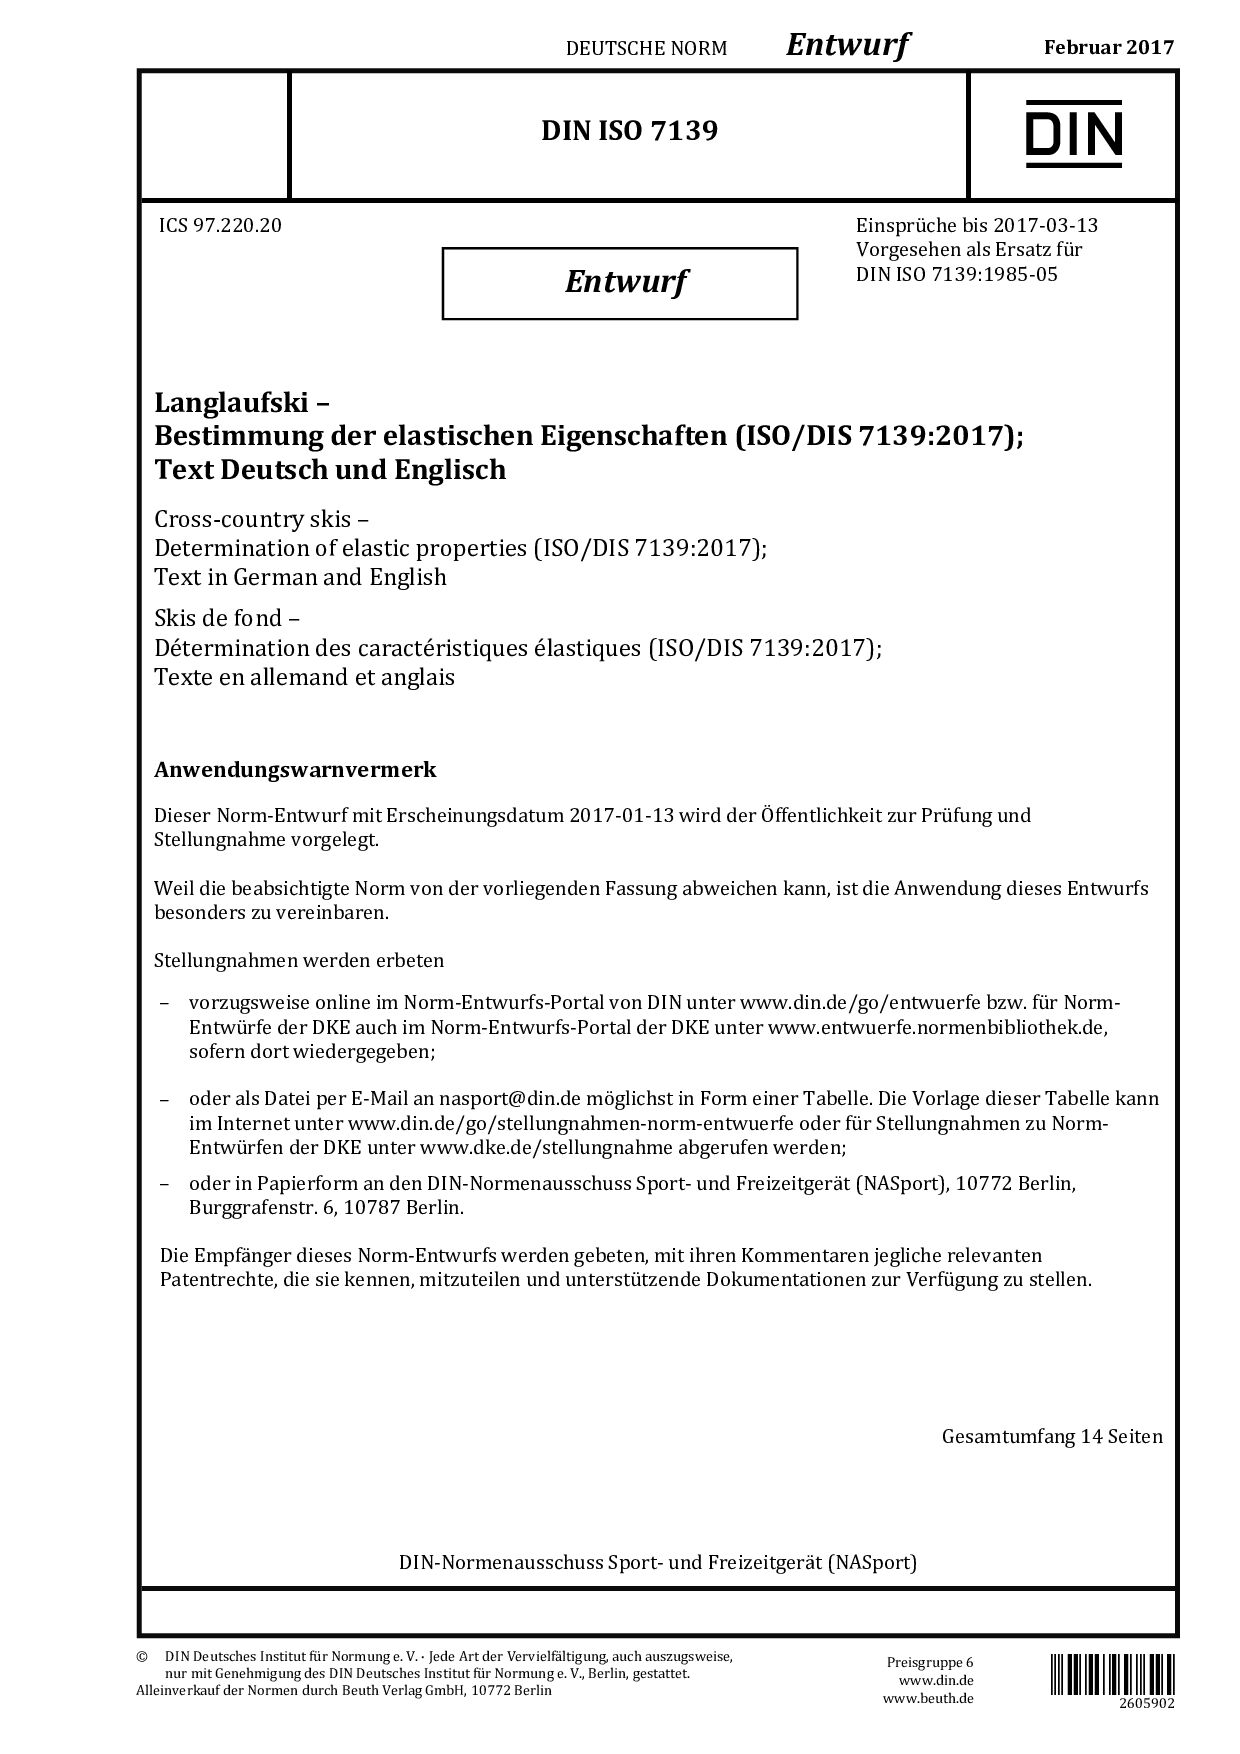 DIN ISO 7139 E:2017-02封面图